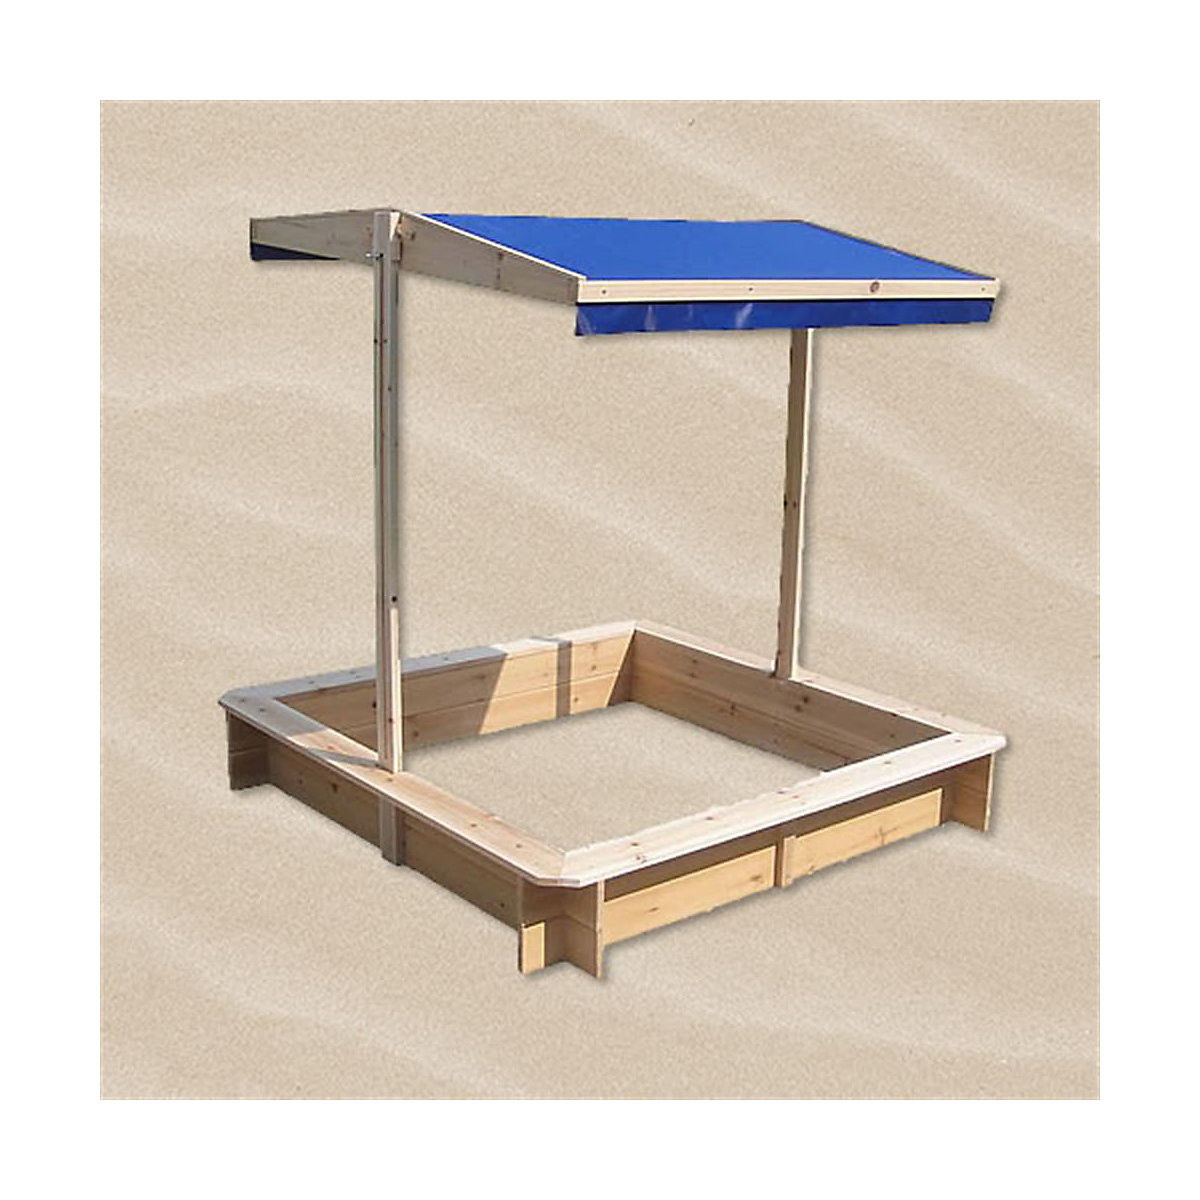 Mucola Sandkasten Sandbox Sandkiste Spielhaus aus Holz mit verstellbaren Dach in Blau